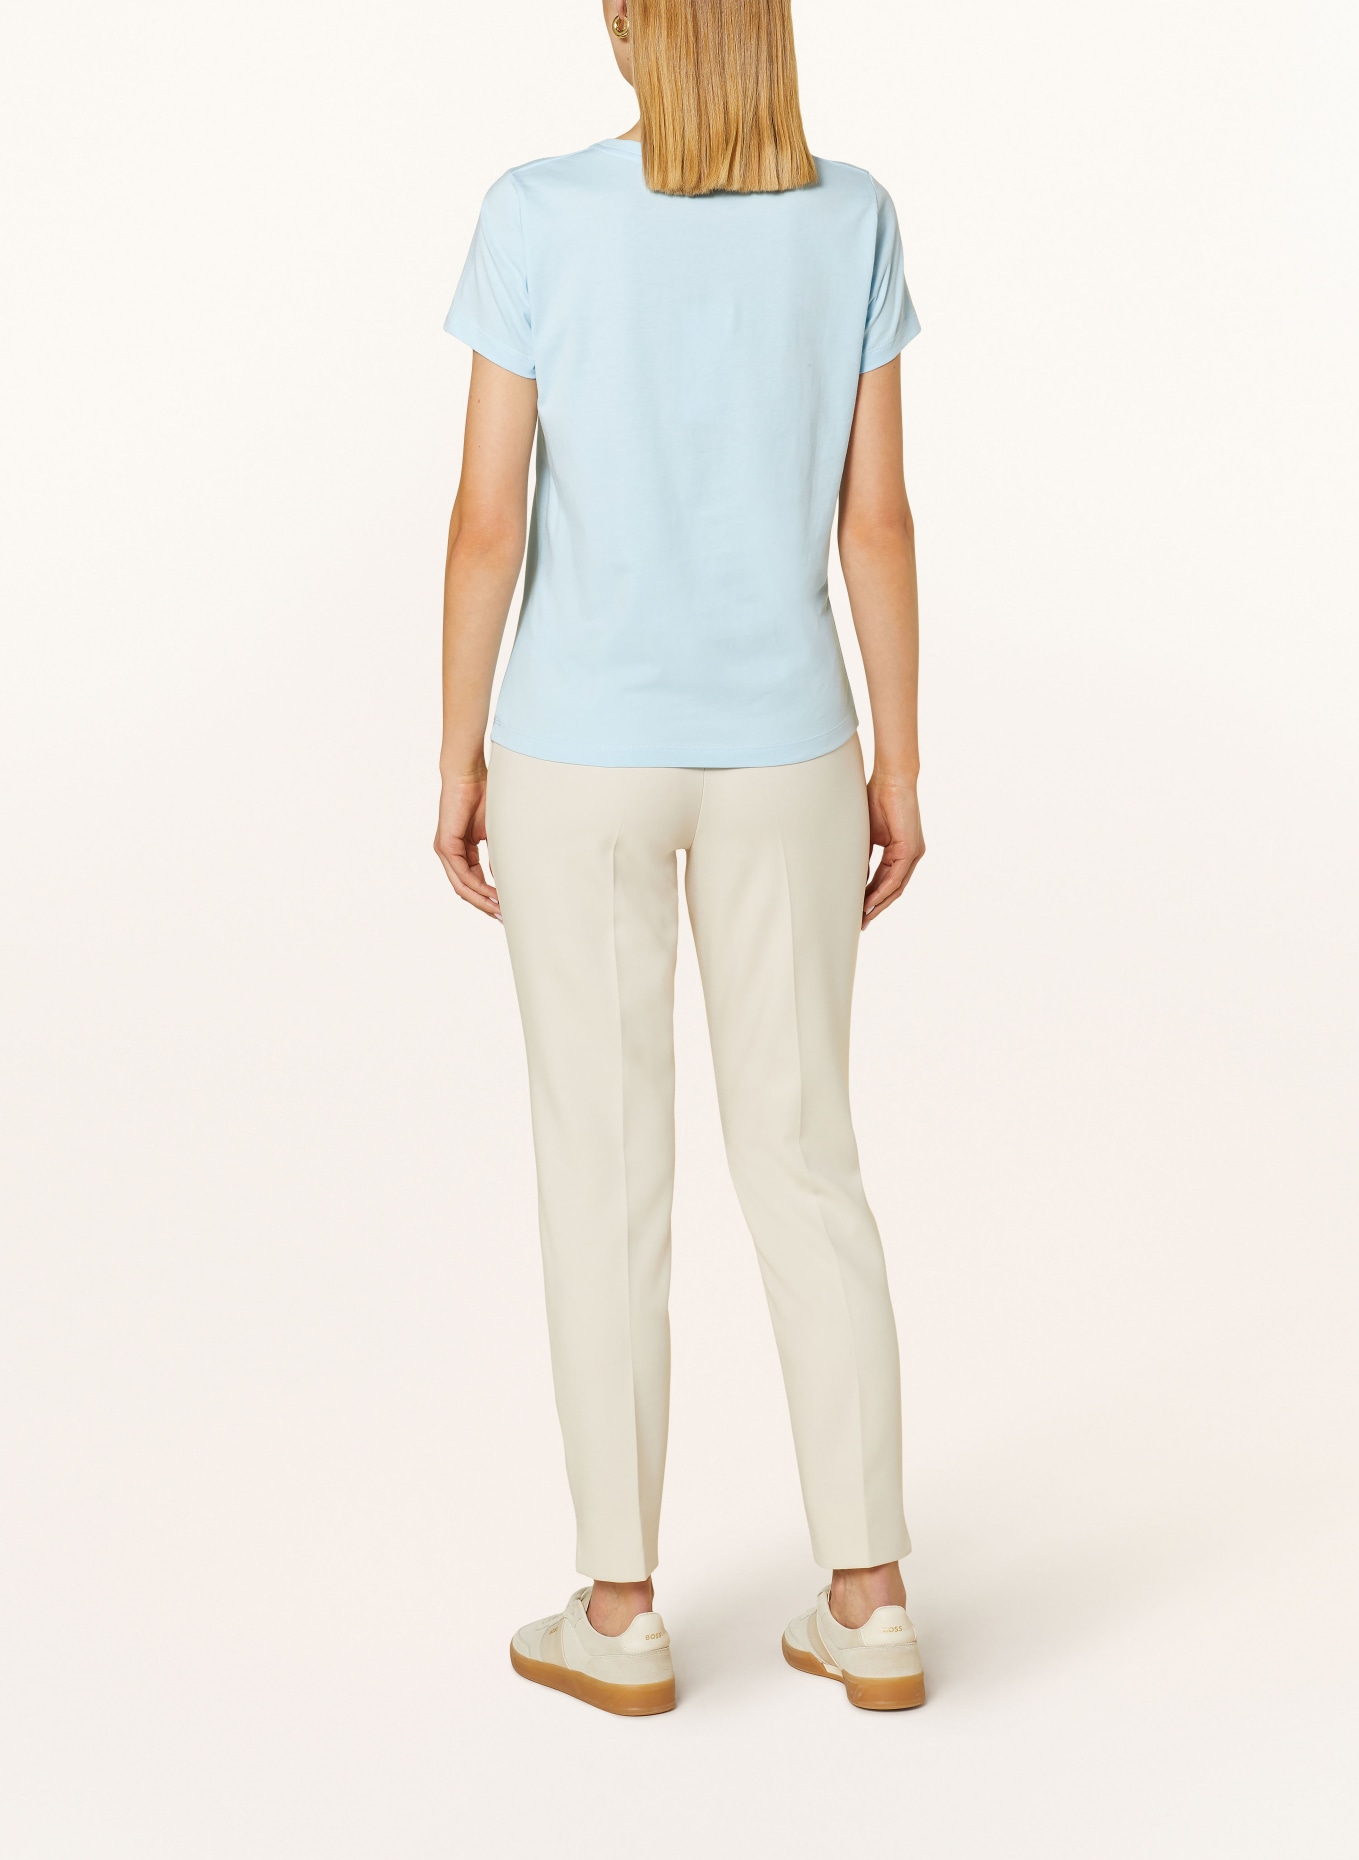 HOBBS T-shirt PIXIE, Color: LIGHT BLUE (Image 3)